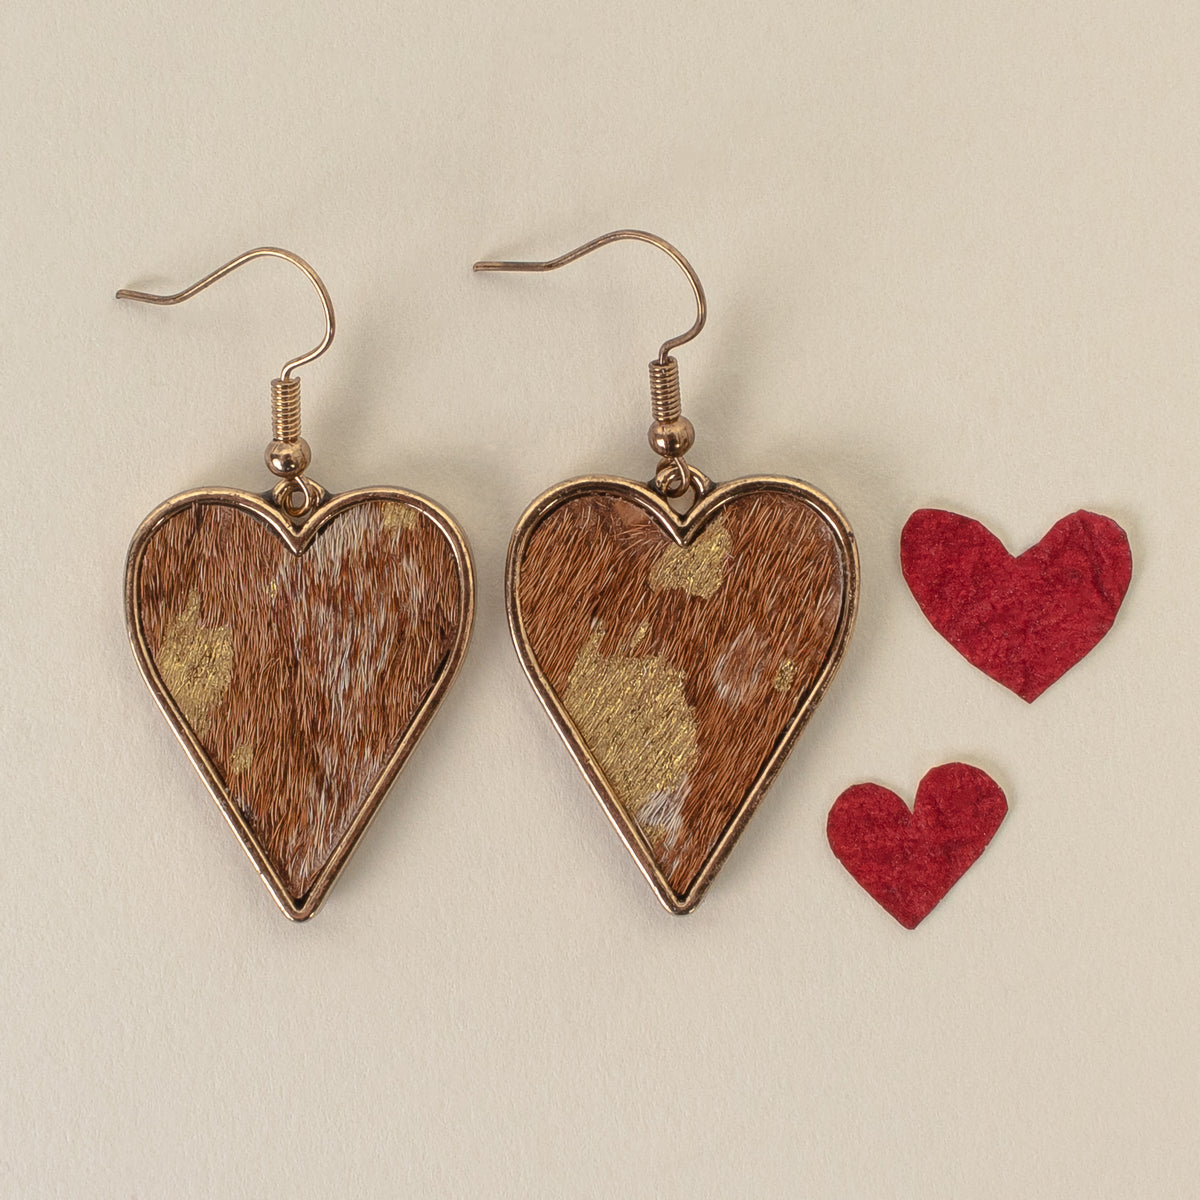 734030 - Leopard Heart Earrings - Brown - Fashion Jewelry Wholesale